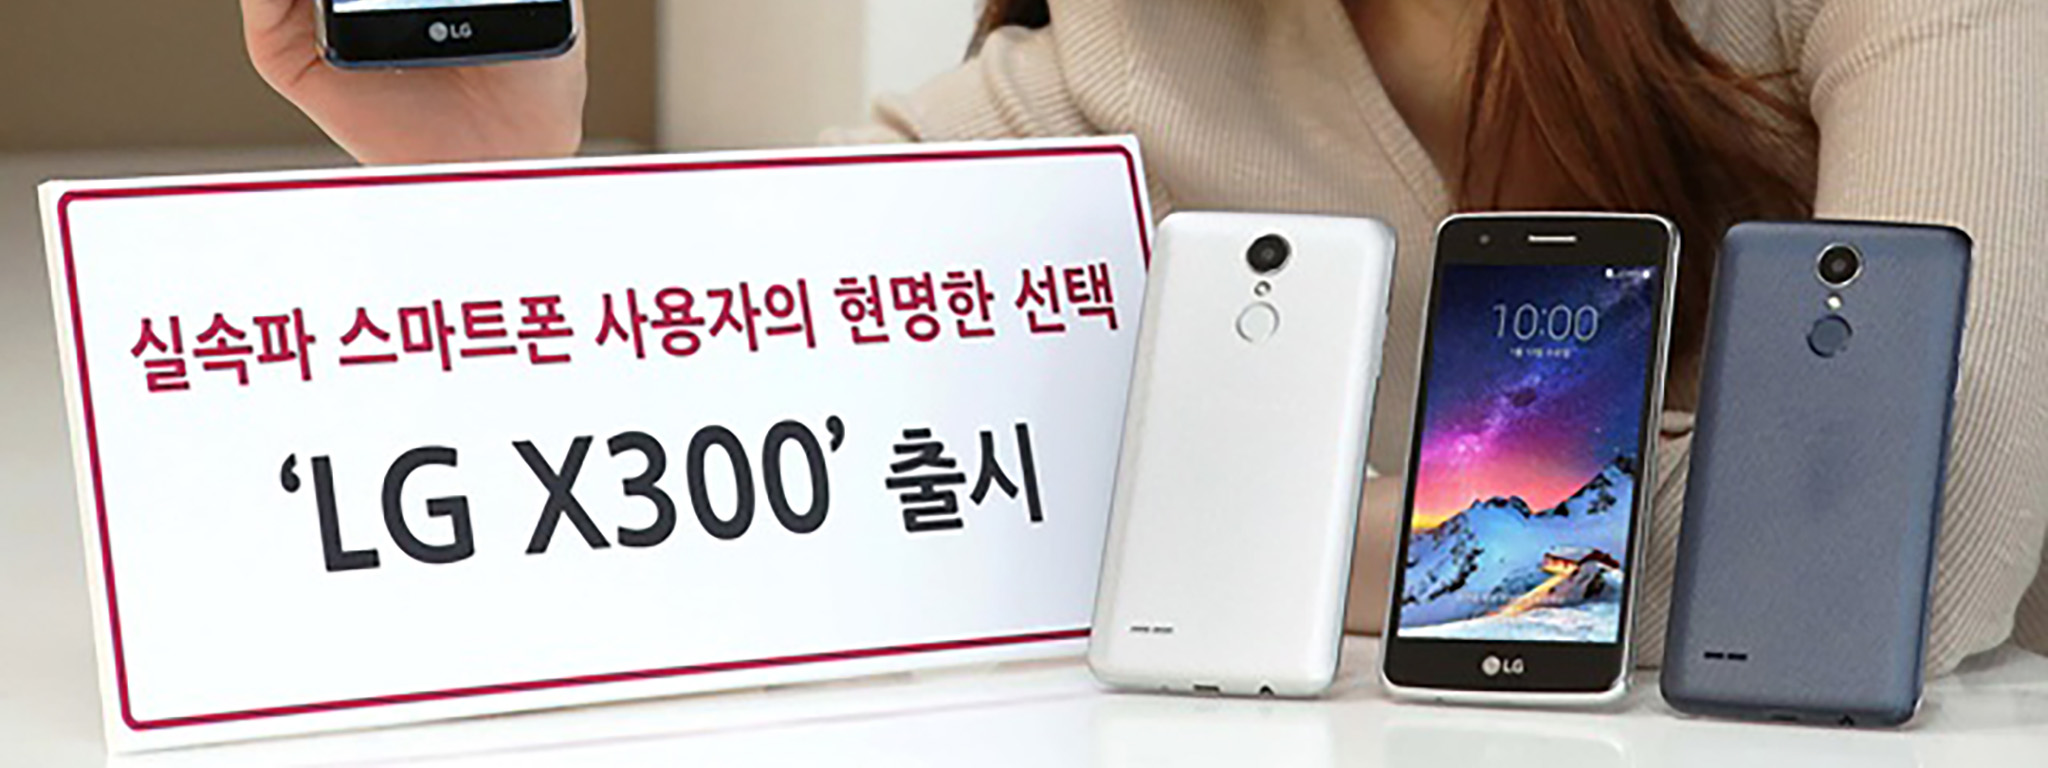 LG ra mắt điện thoại tầm trung X300: Android 7.0, 2 GB RAM, giá ~220 USD